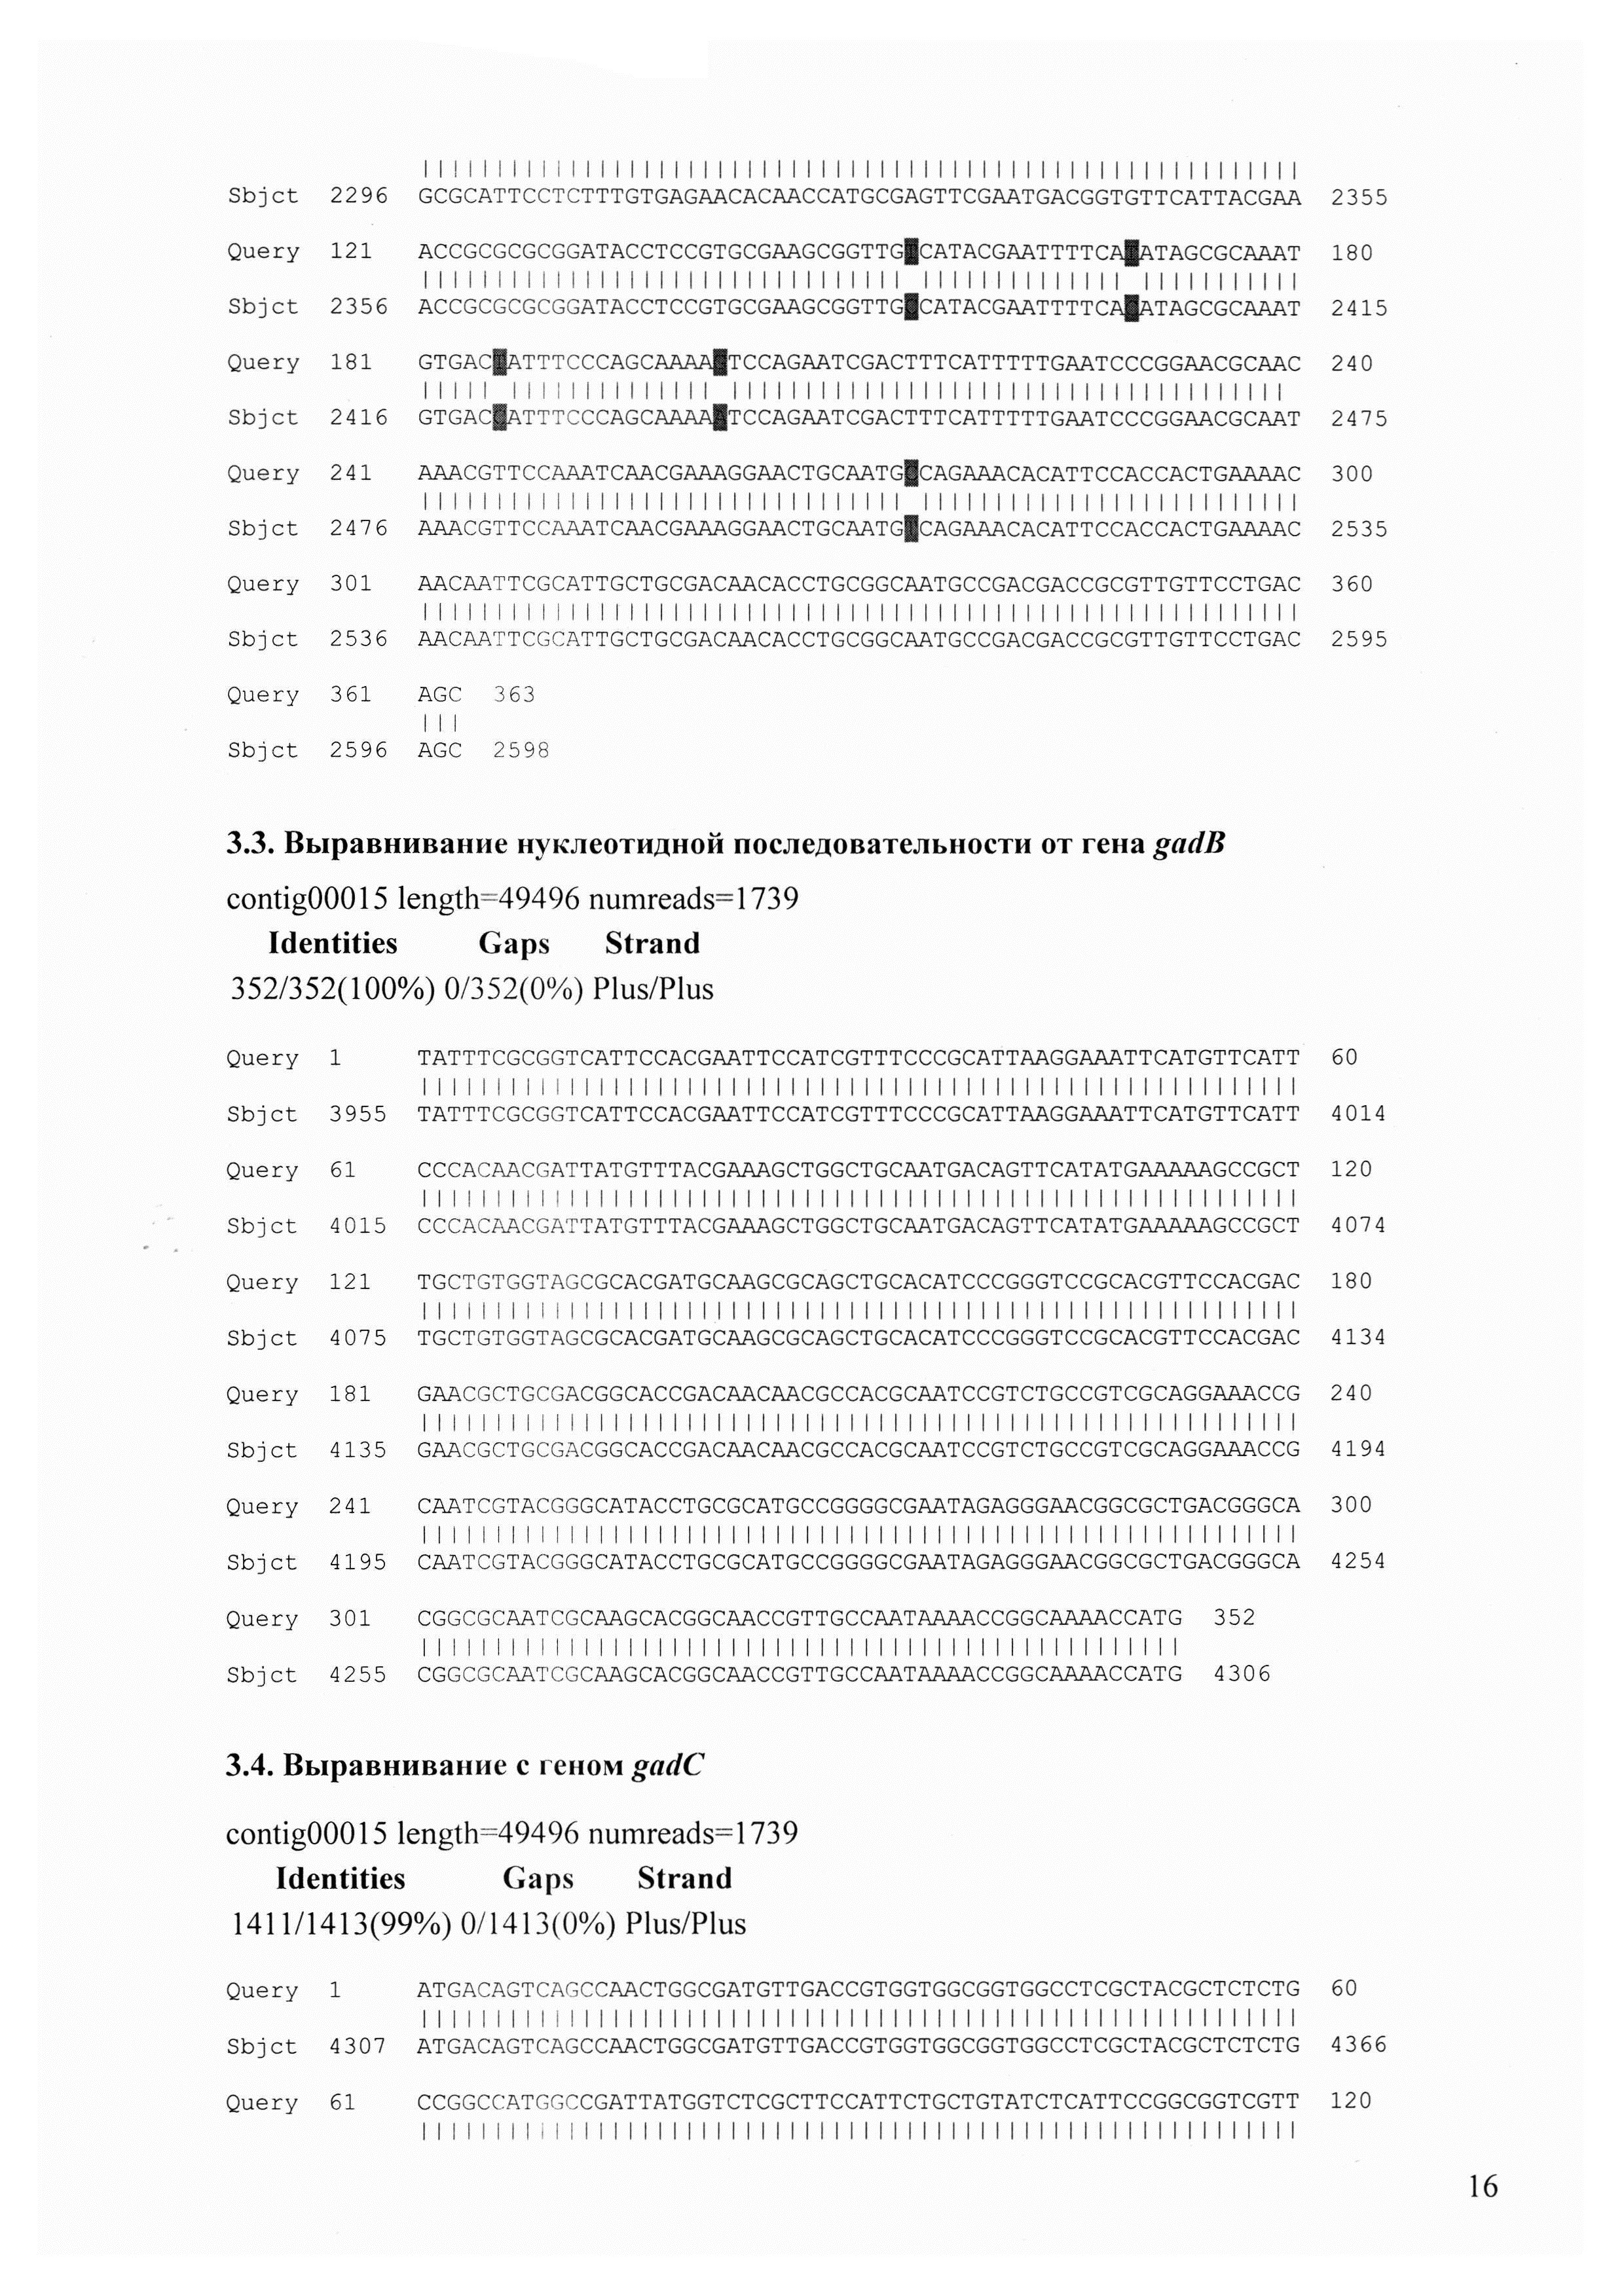 Штаммы Bifidobacterium adolescentis 150 и Bifidobacterium angulatum GT 102, синтезирующие гамма-аминомасляную кислоту